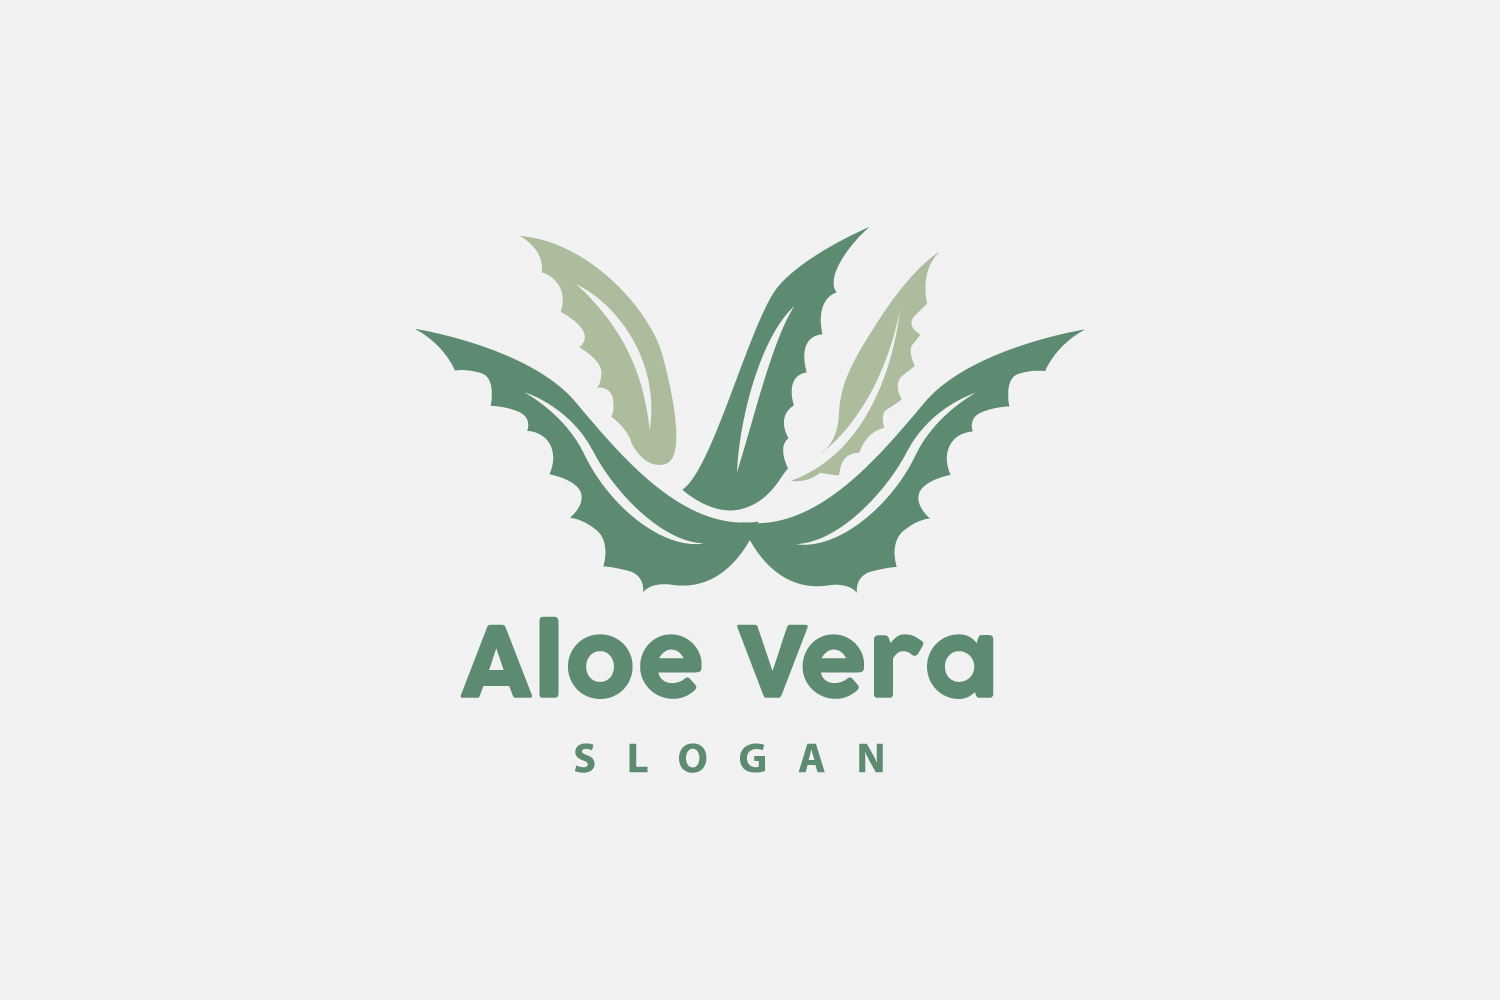 Aloe Vera Logo Herbal Plant VectorV27